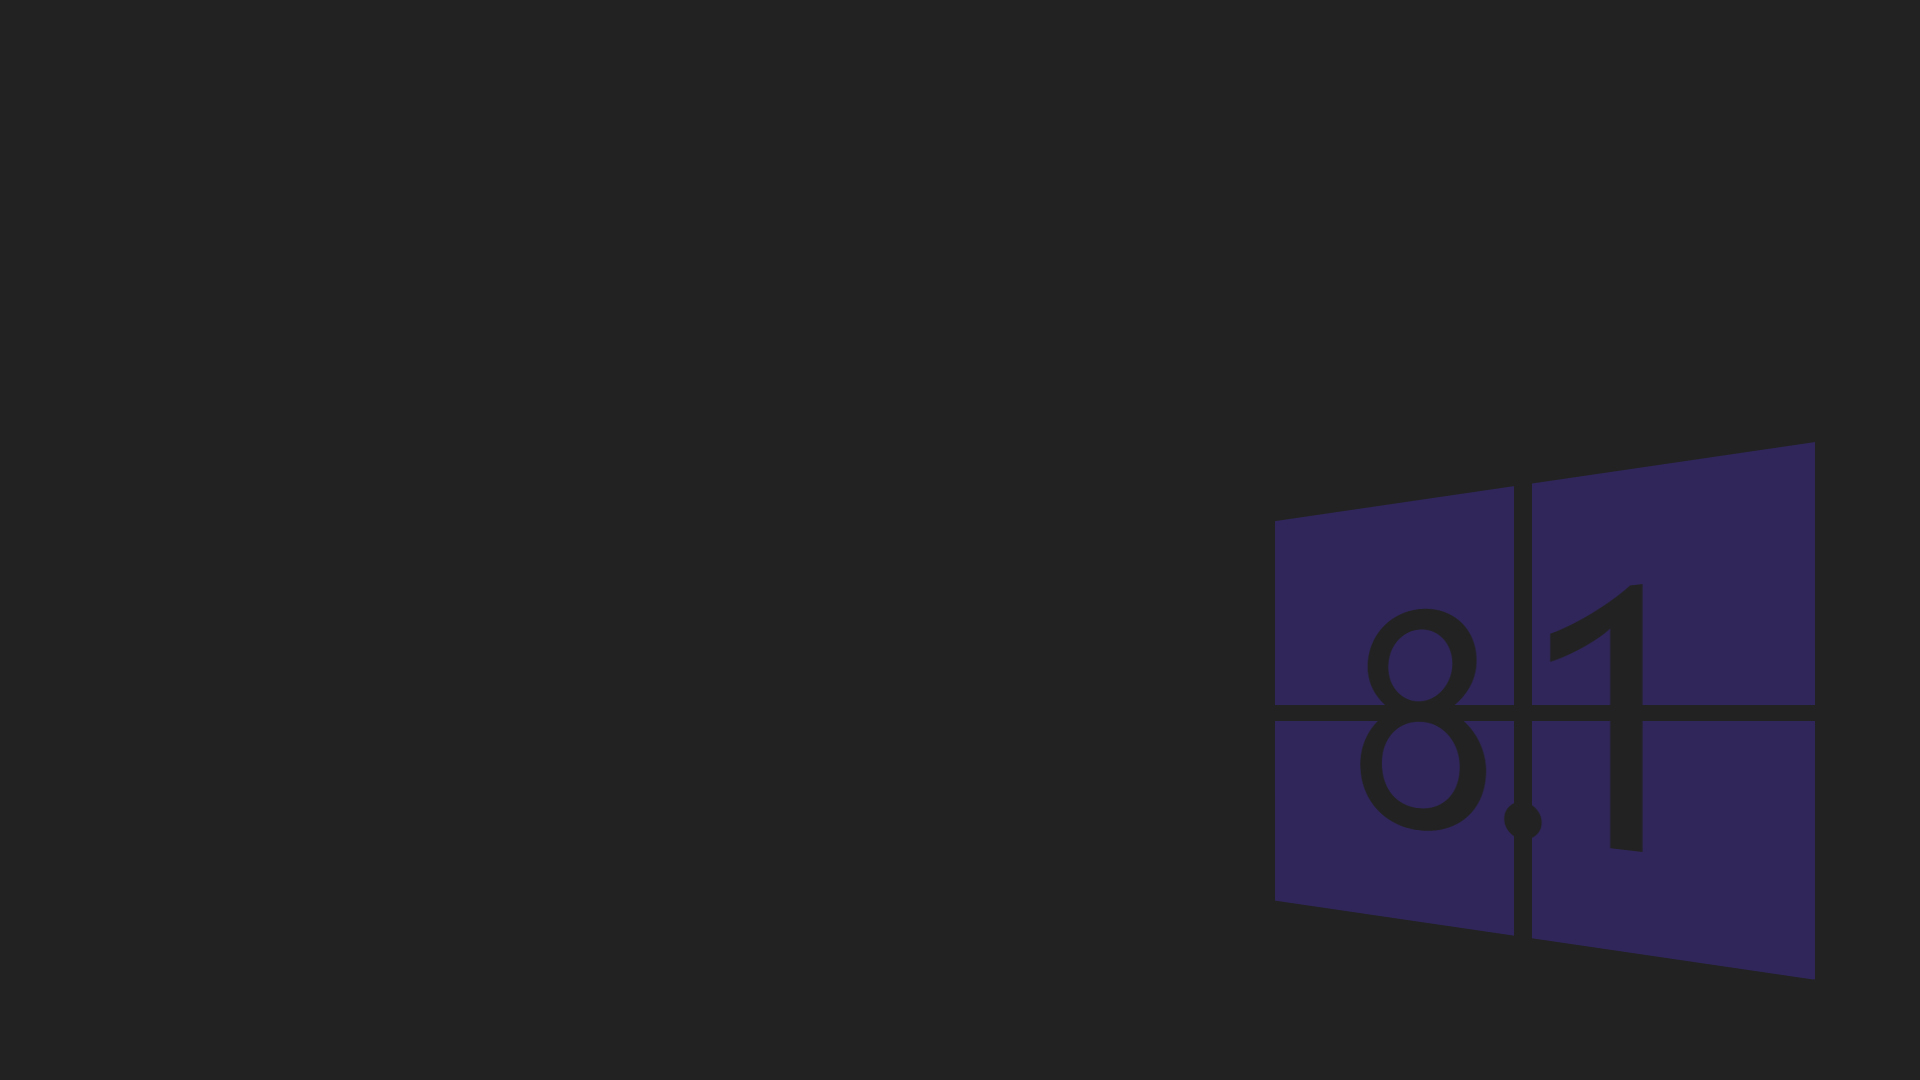 Hình nền Windows 8.1 đen là một lựa chọn phổ biến cho những người yêu thích cái đẹp và trang nhã. Thiết kế tối giản mang đến cho bạn một trải nghiệm hiện đại và sang trọng, đem lại sự tập trung cho công việc của bạn khi sử dụng máy tính.